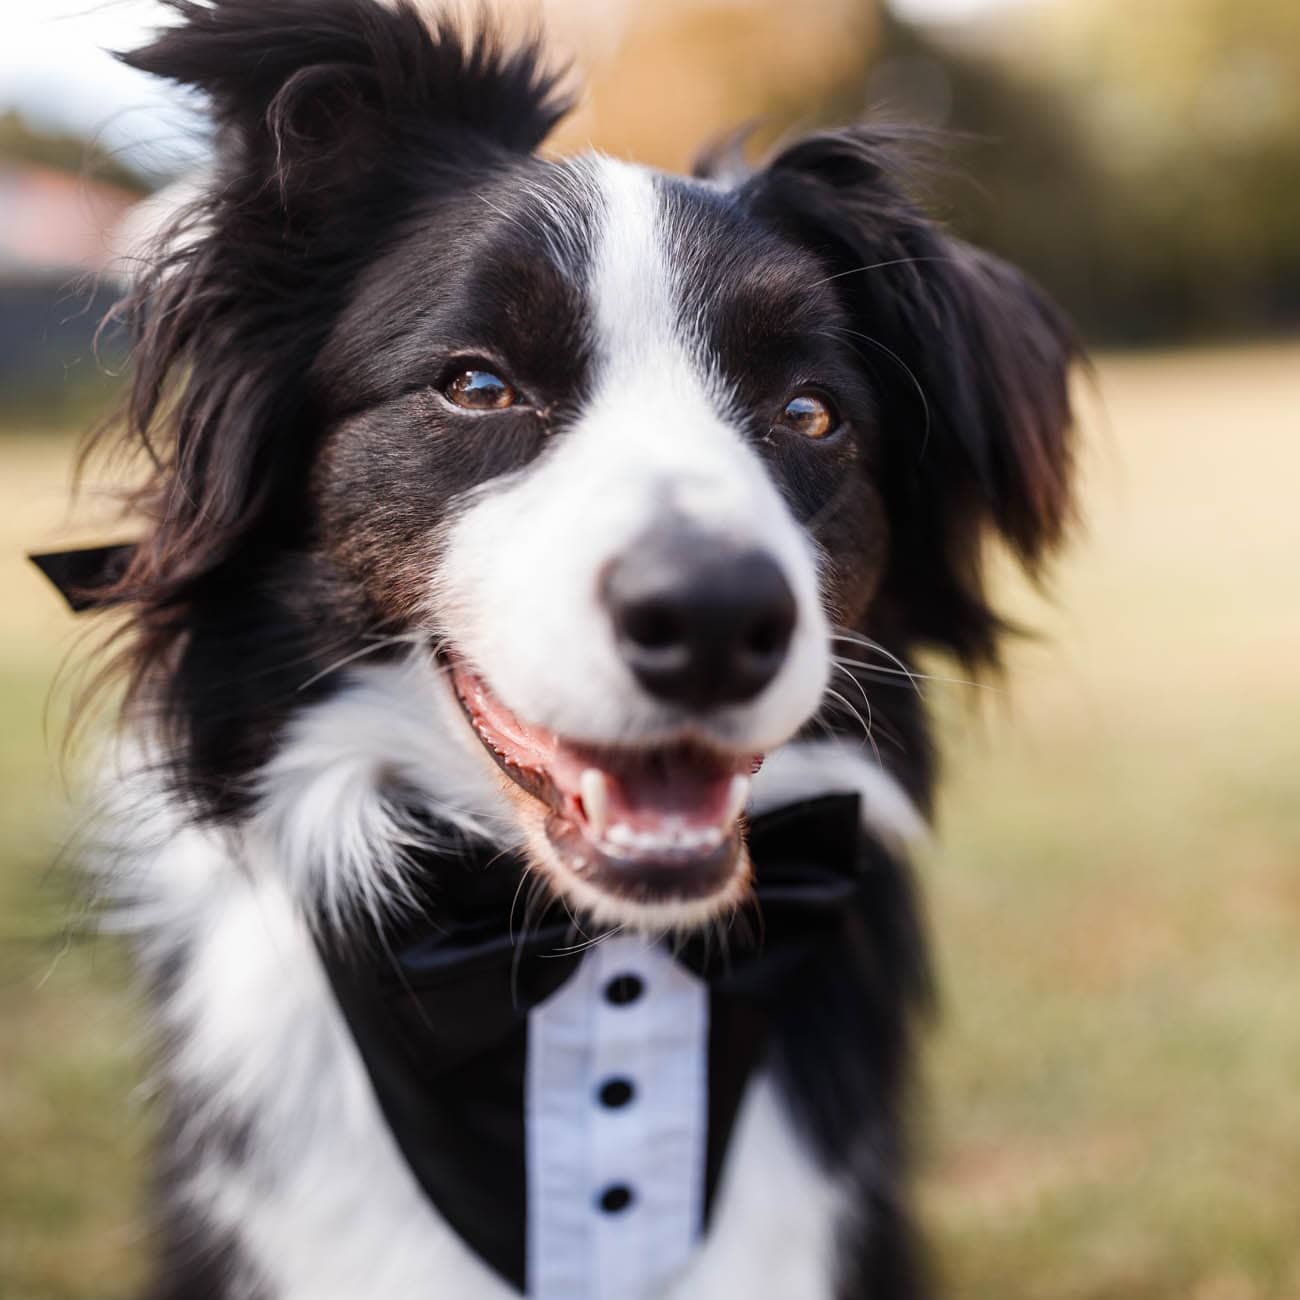 Dogs in weddings 041 1